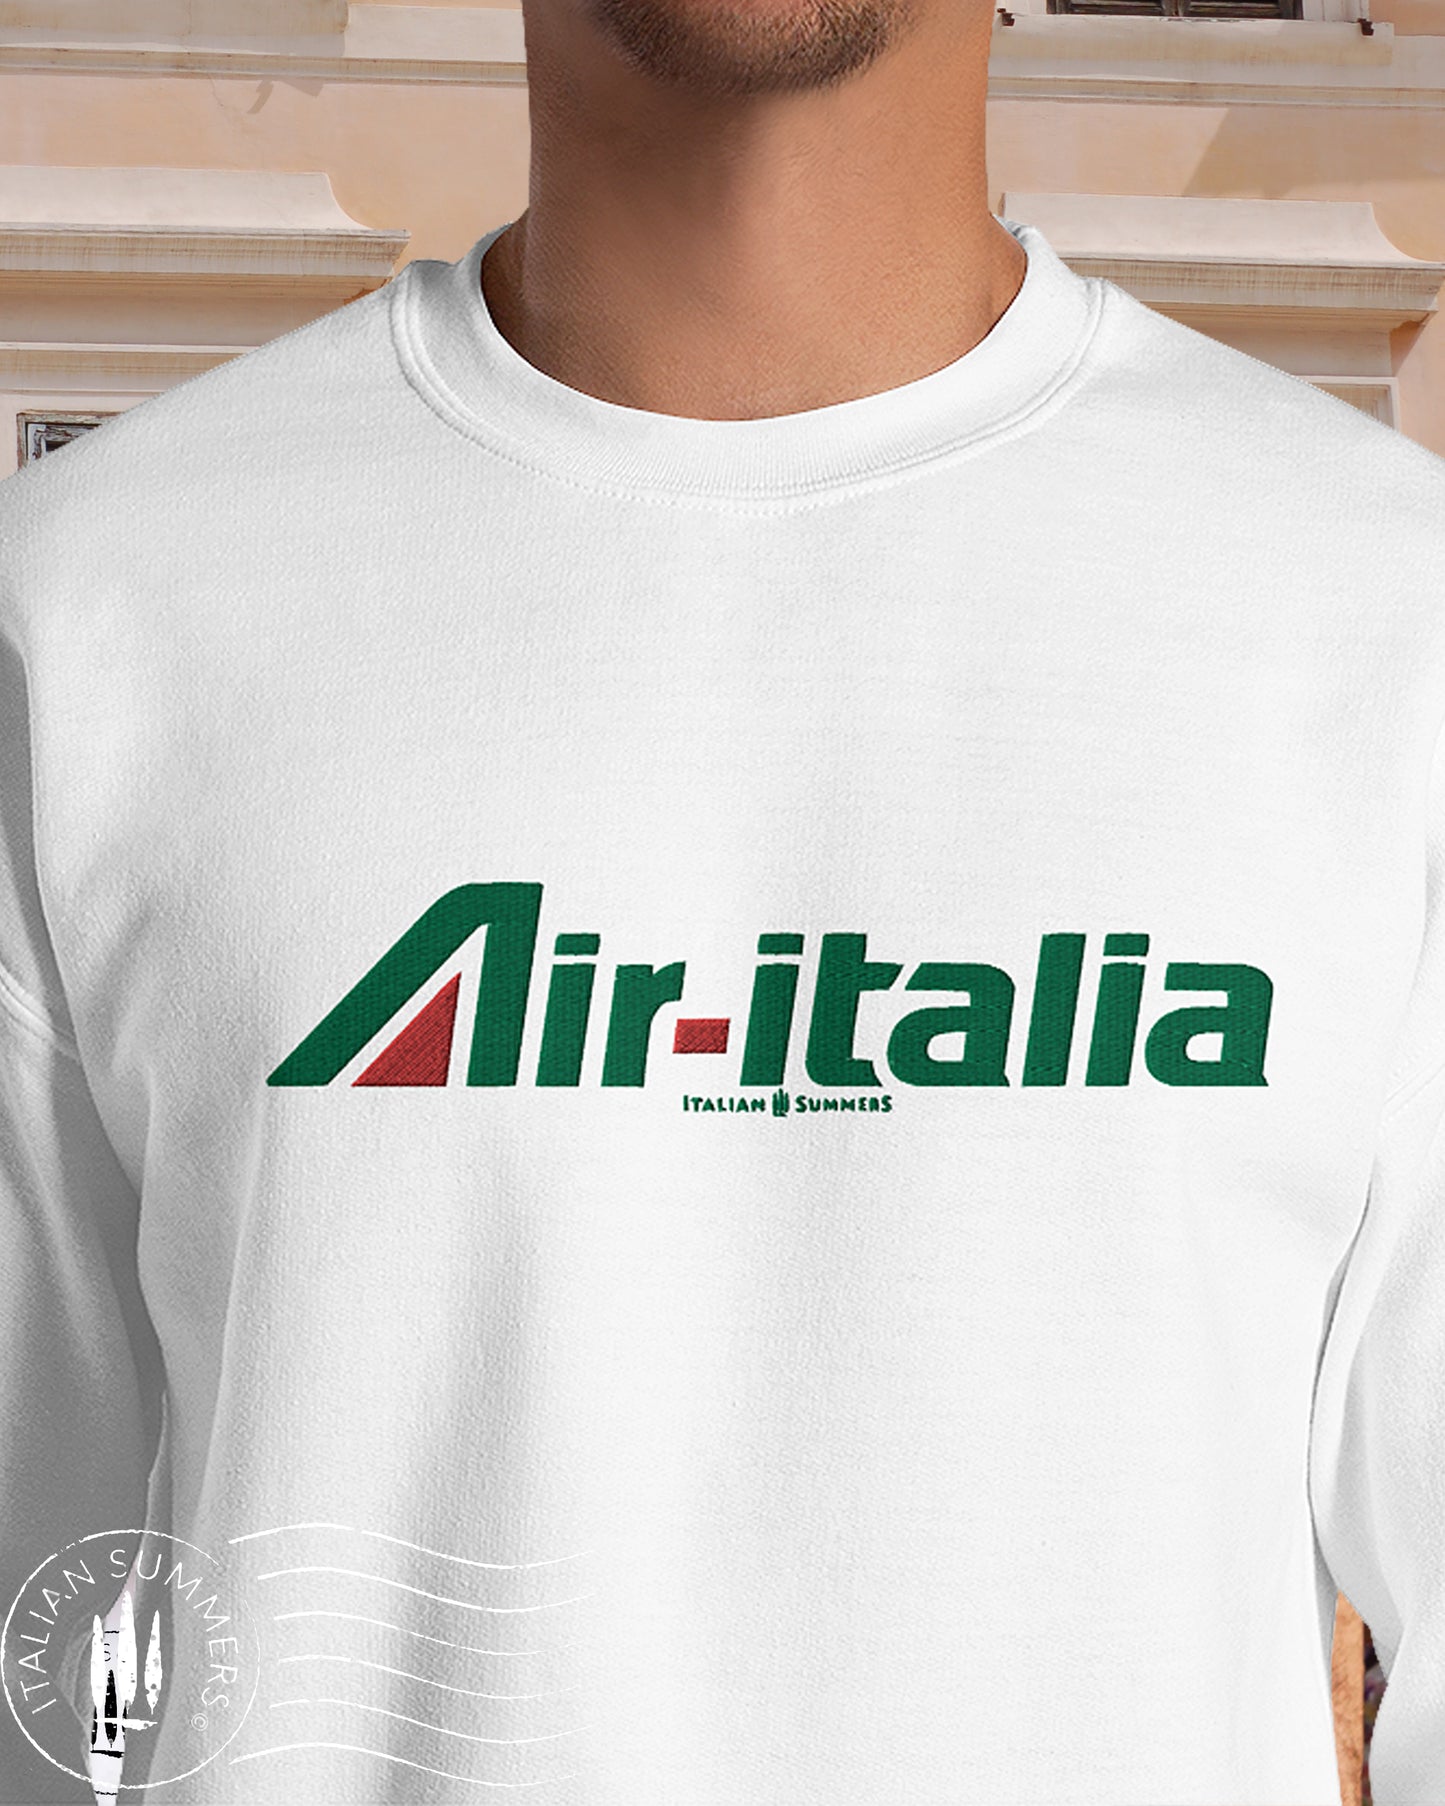 Embroidered Sweatshirt AIR ITALIA, Italy traveler, Italian retrostalgia, Italy vacation, Italian Air travel, Italy.